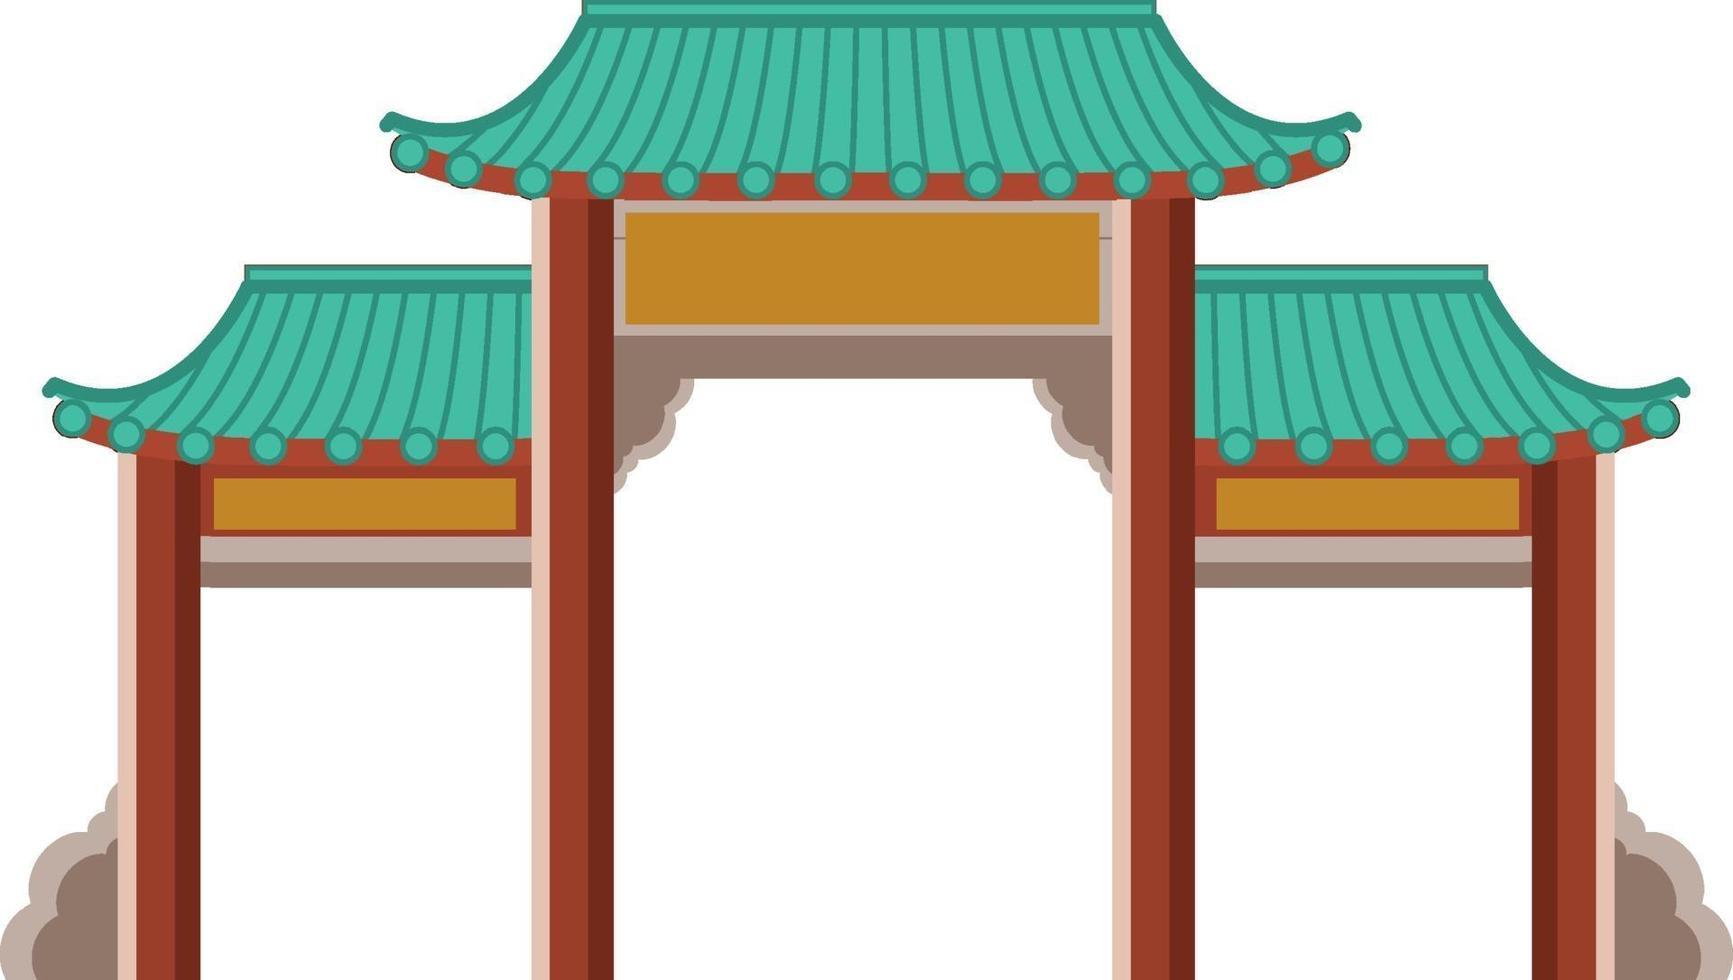 Chinesisches Tor oder Paifang auf weißem Hintergrund vektor